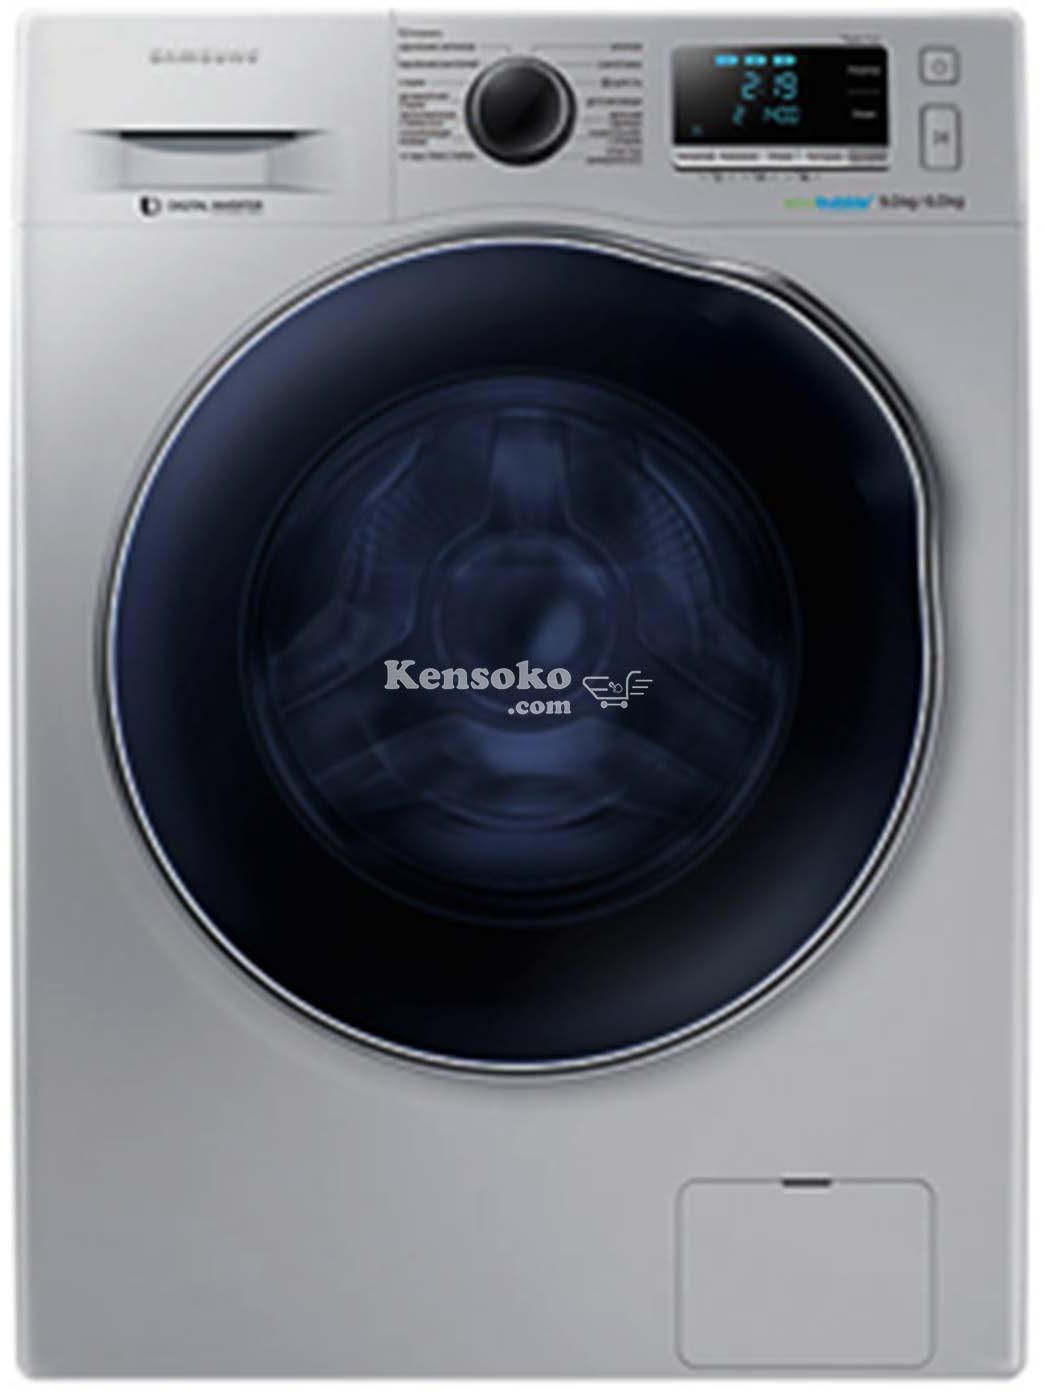 Samsung WD90J6410AX Washing Machine (Washer + Dryer)